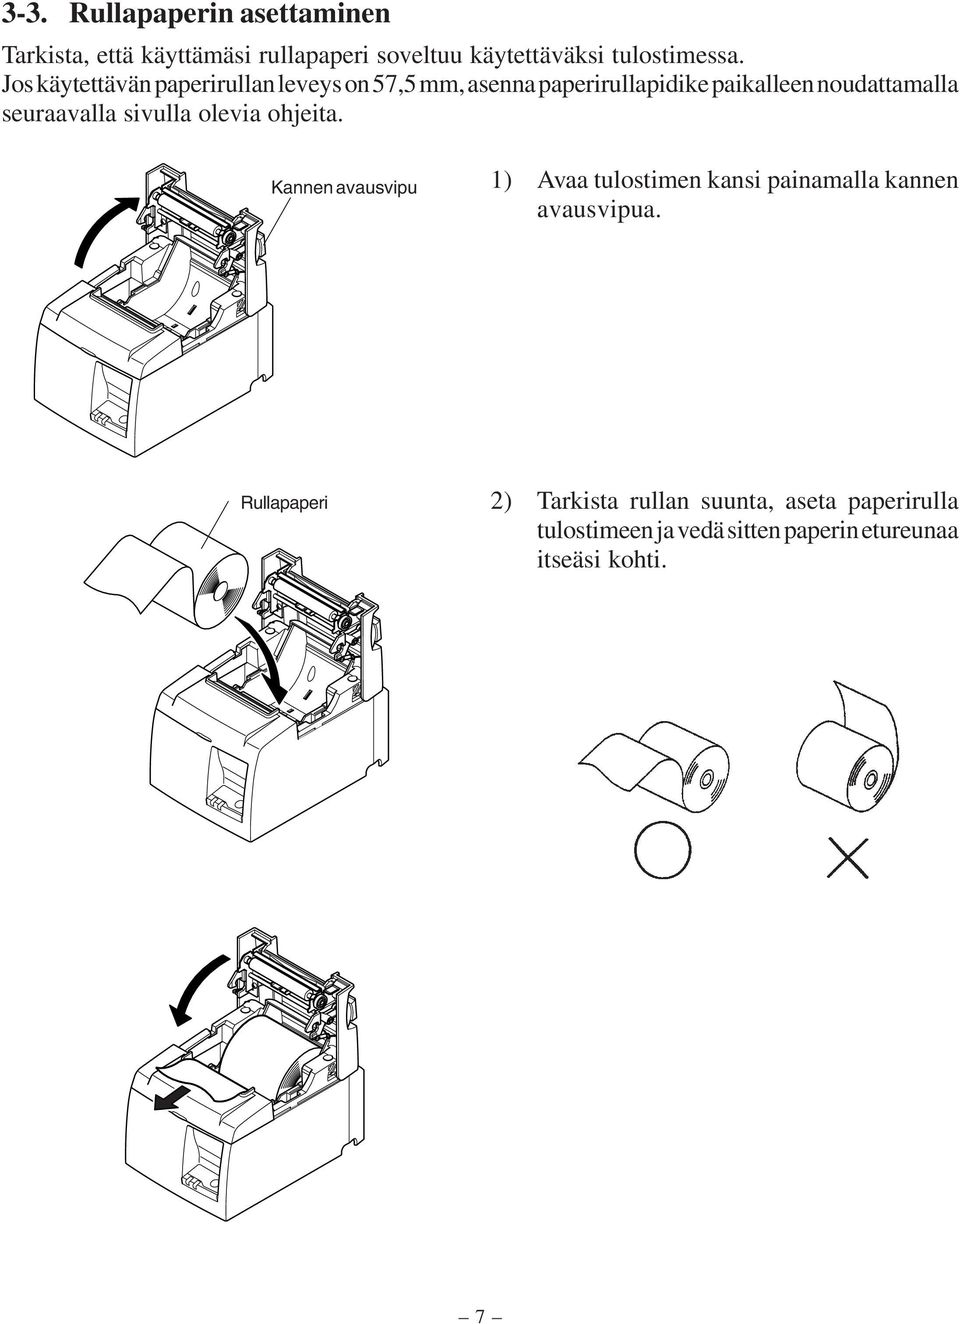 seuraavalla sivulla olevia ohjeita. Kannen avausvipu 1) Avaa tulostimen kansi painamalla kannen avausvipua.